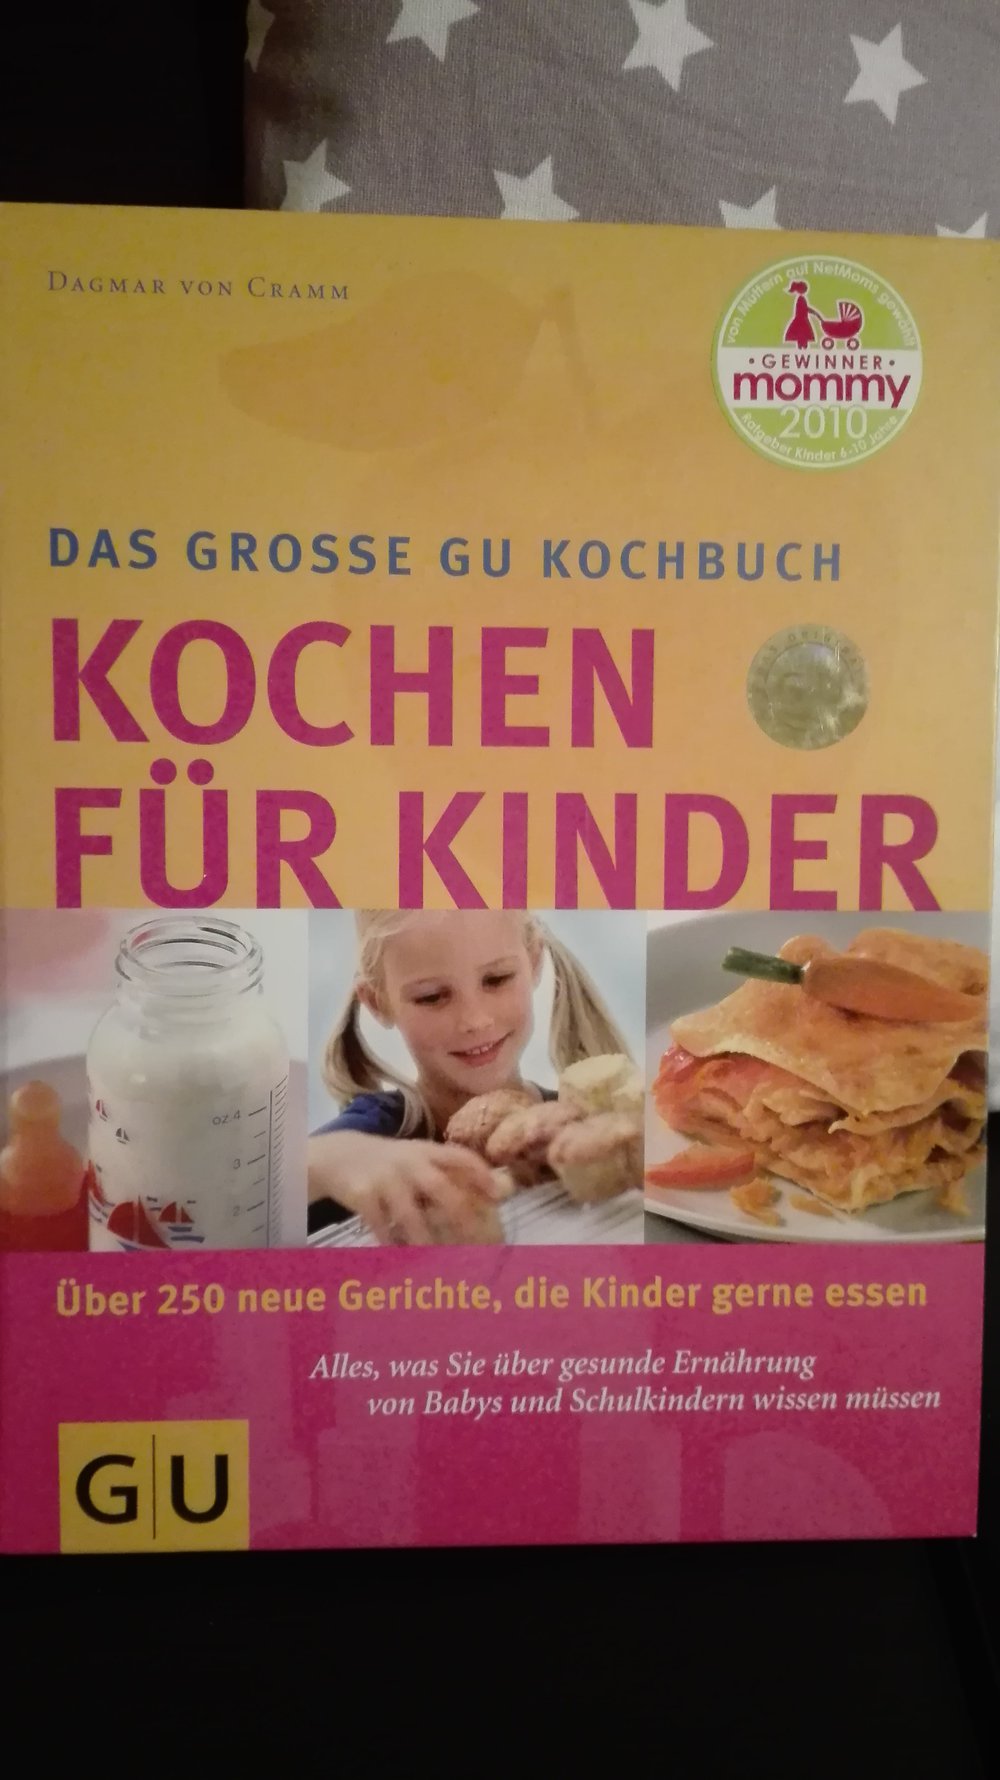 Das große GU Kochbuch - Kochen für Kinder